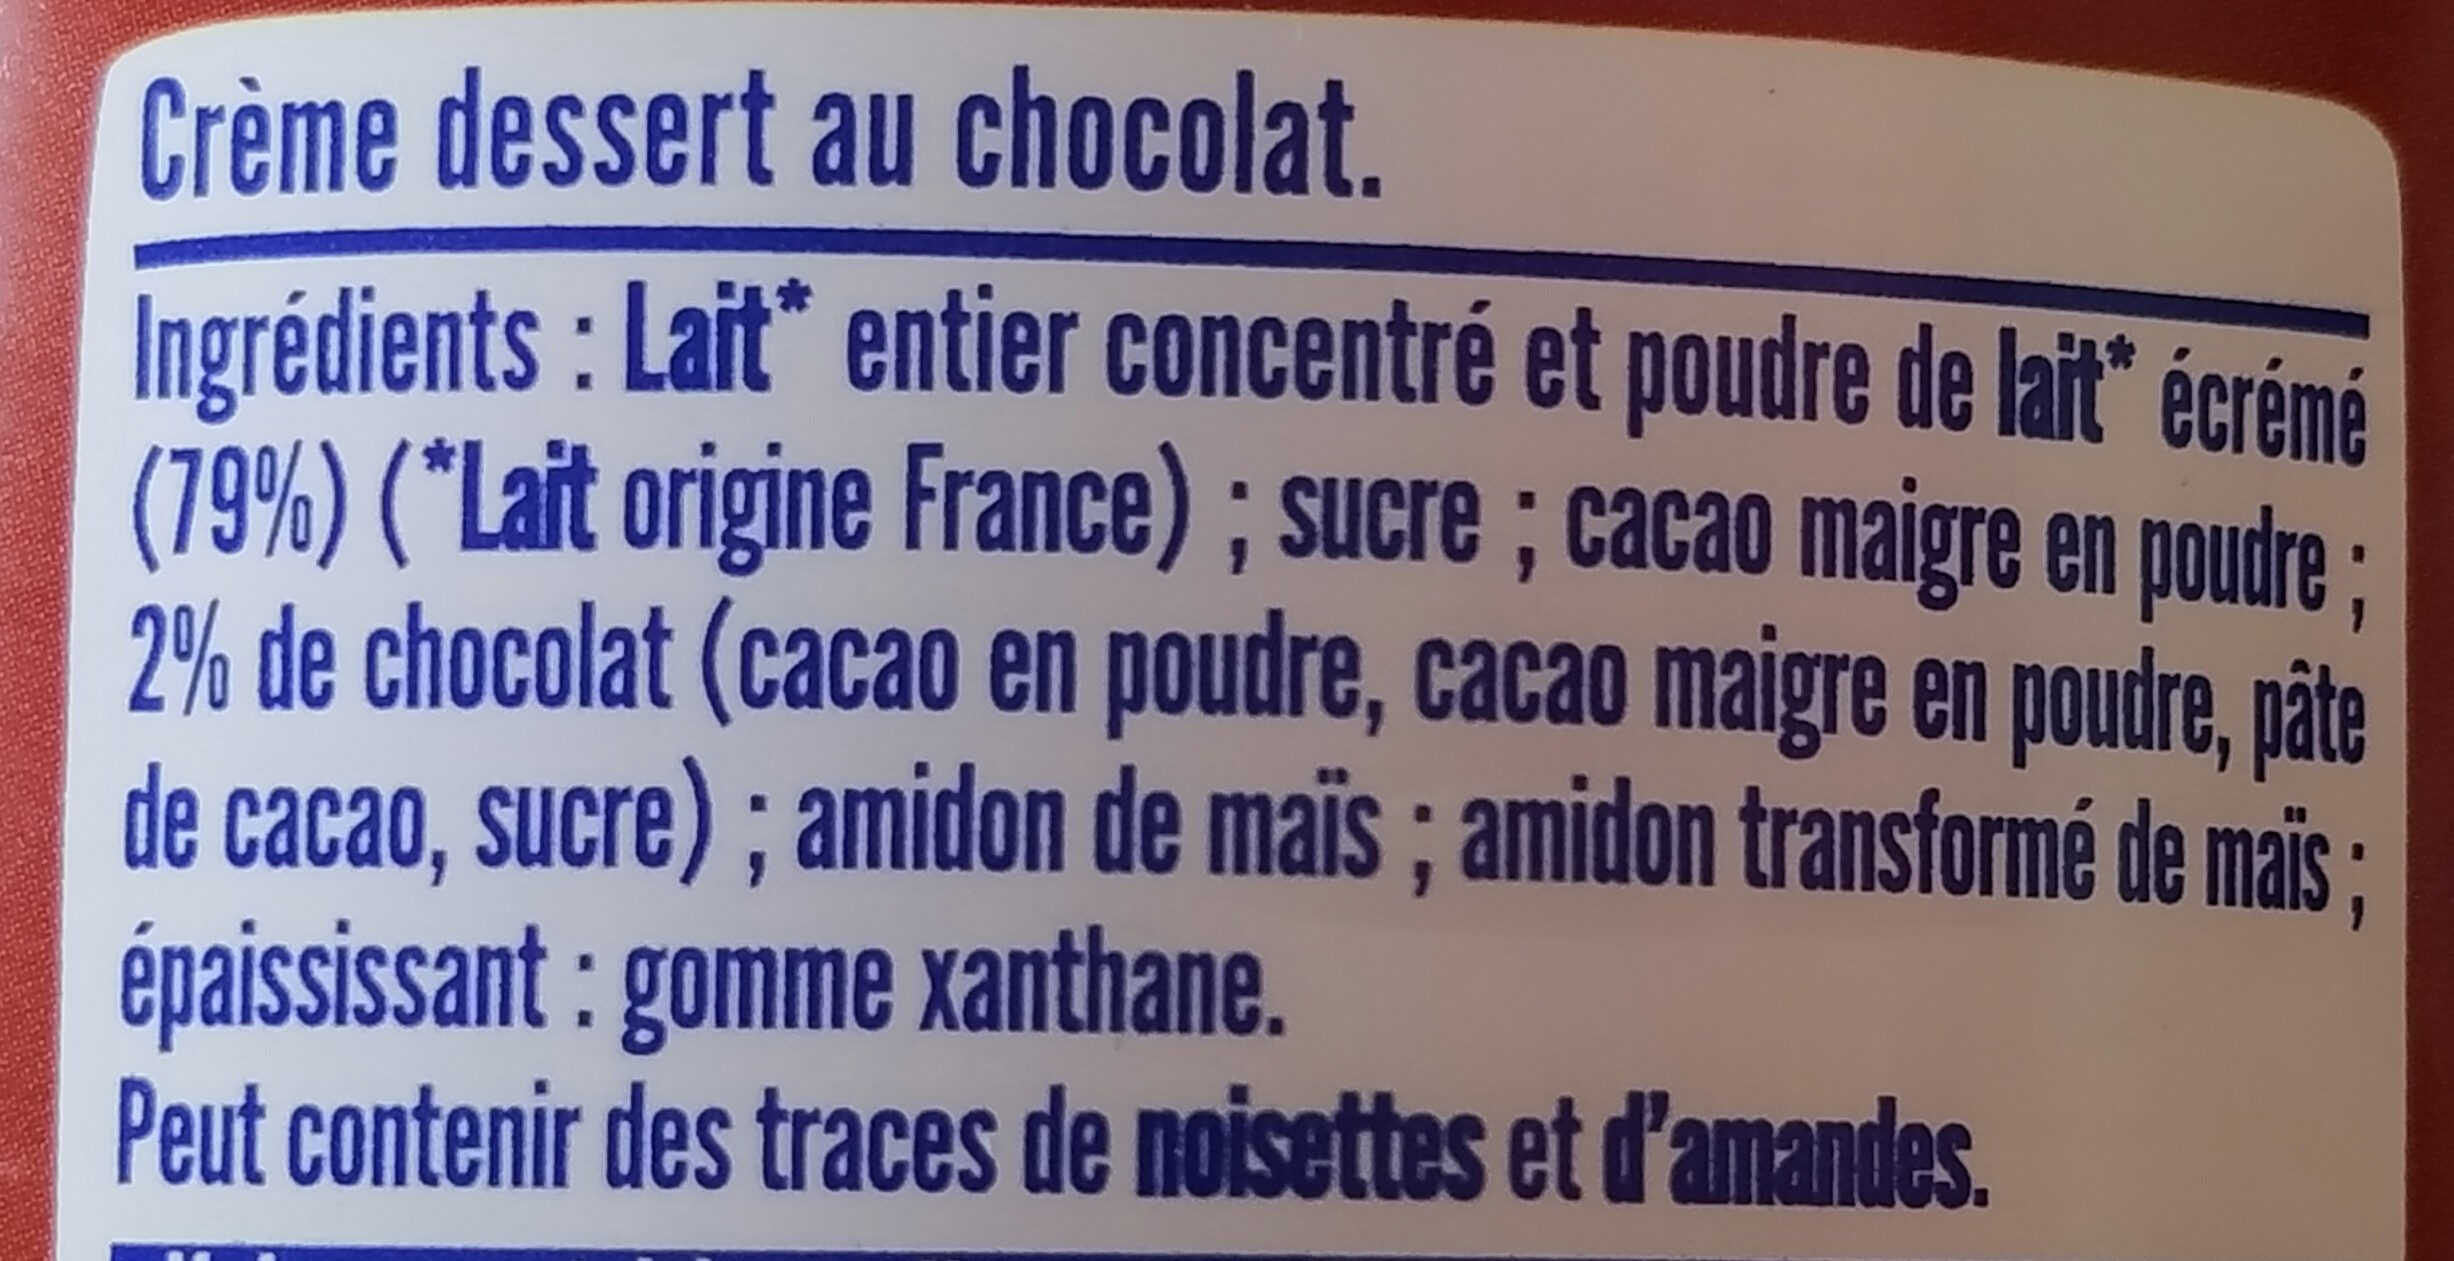 MONT BLANC Crème dessert Boîte Chocolat 570g - Ingredienti - fr